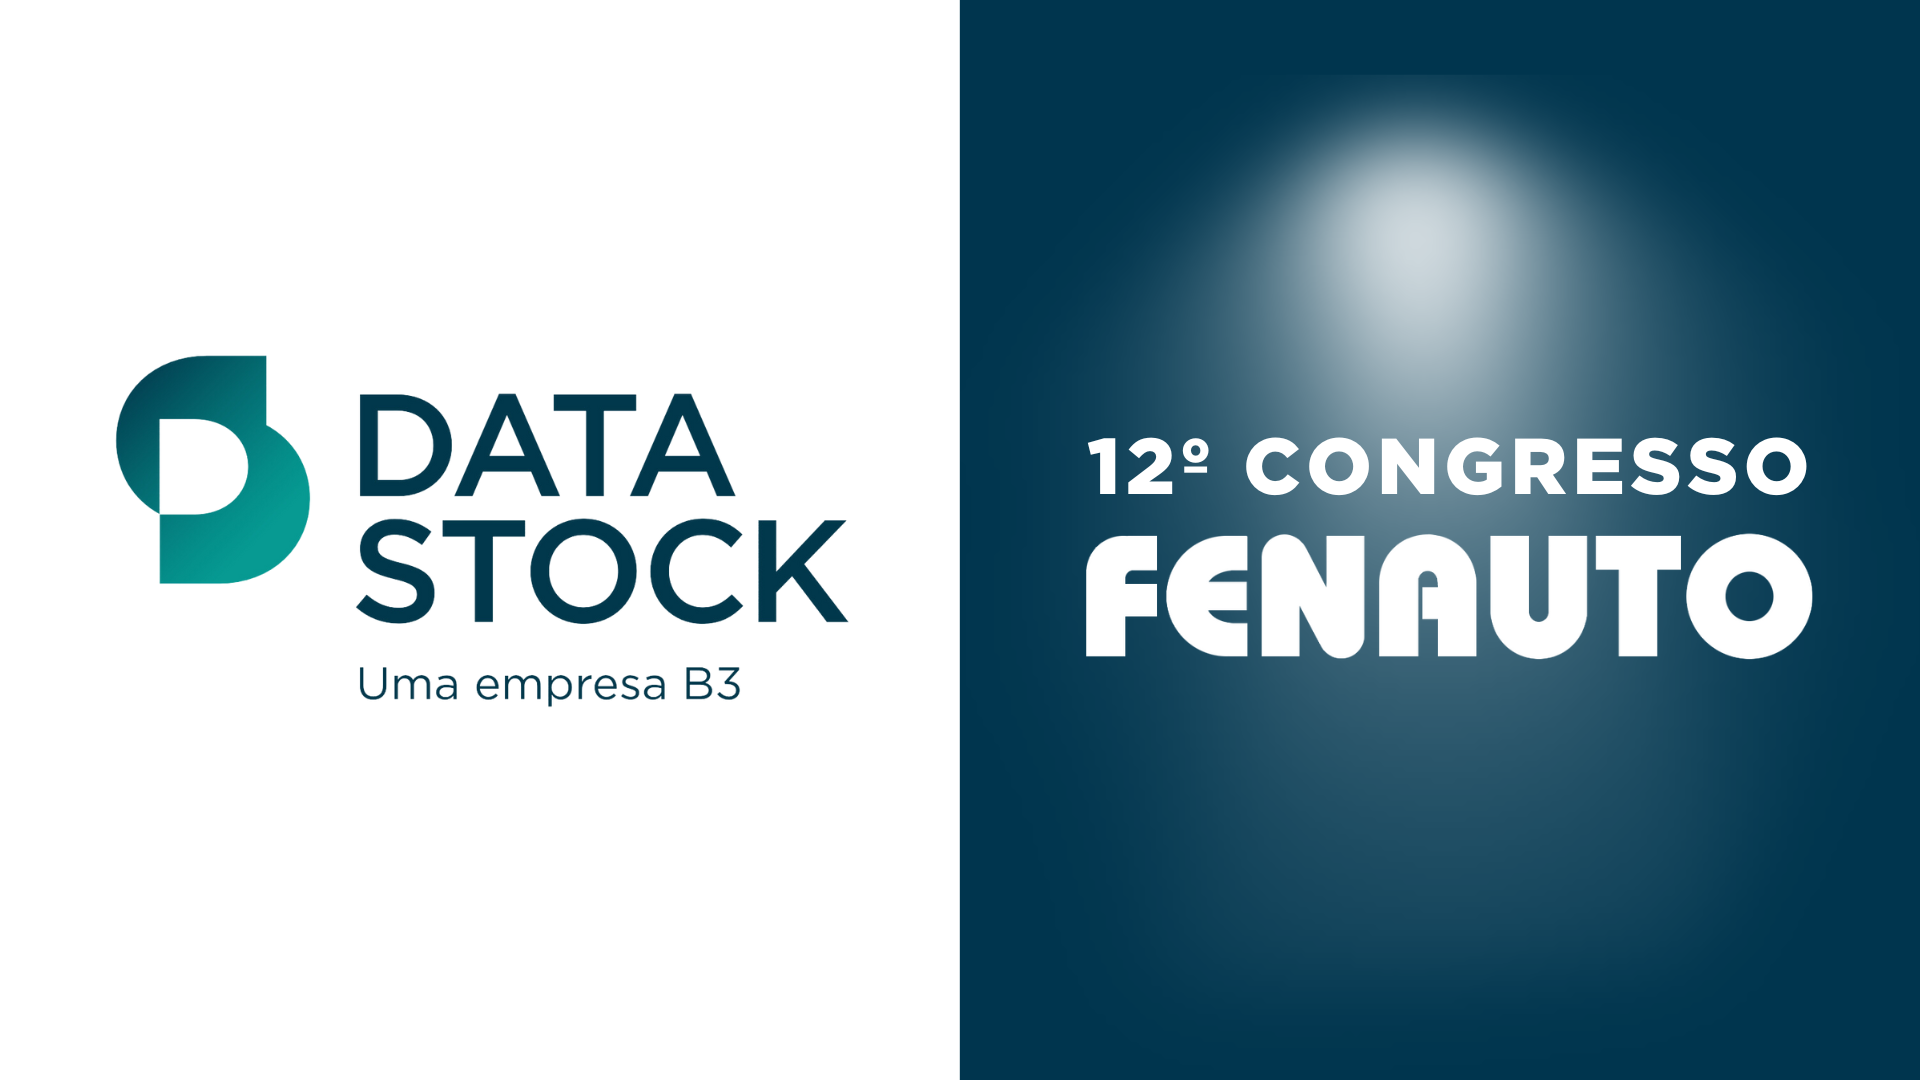 DataStock é destaque no 12º Congresso FENAUTO